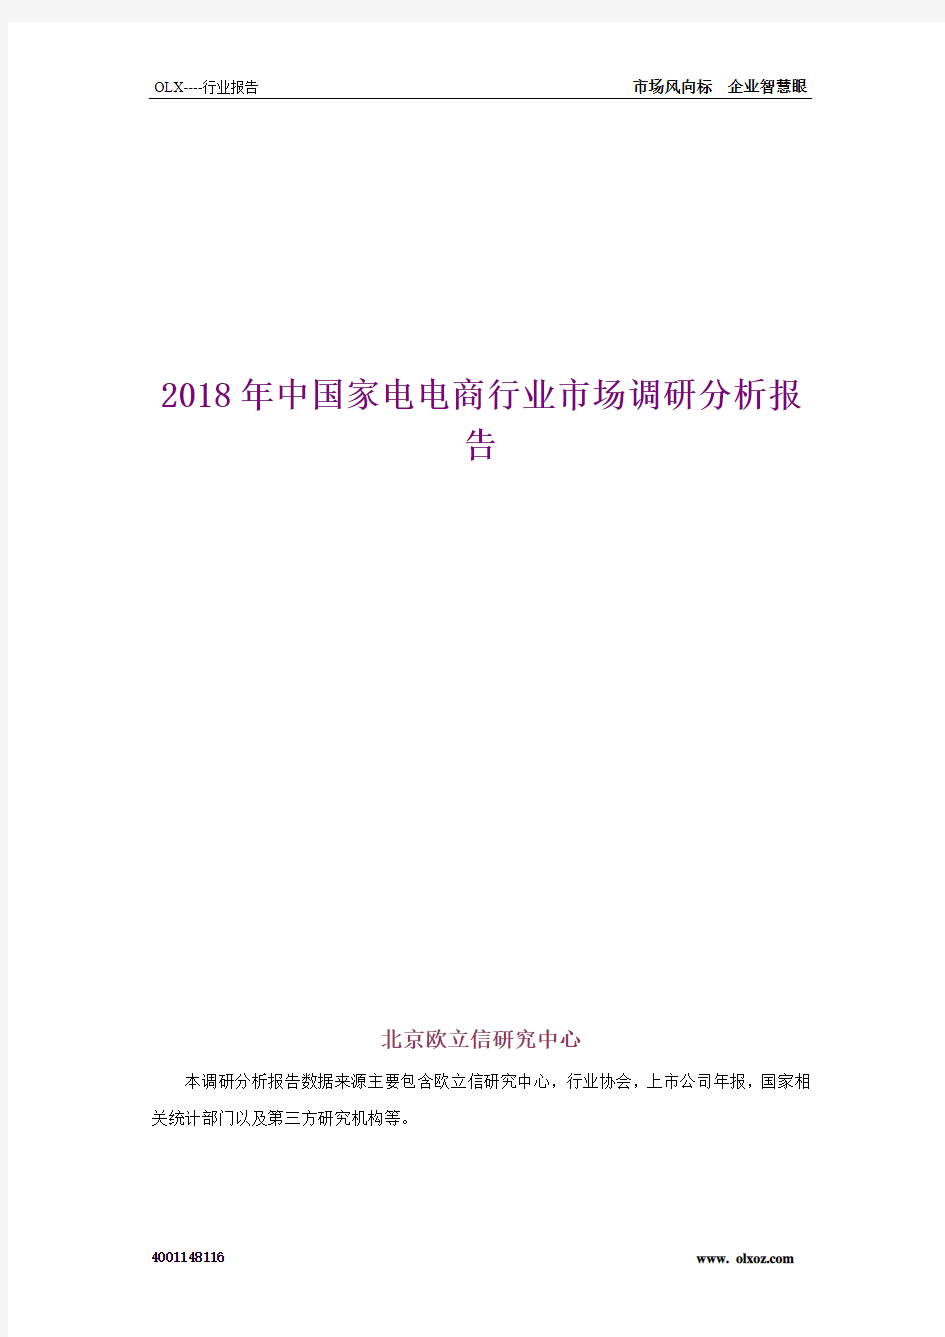 2018年中国家电电商行业市场调研分析报告